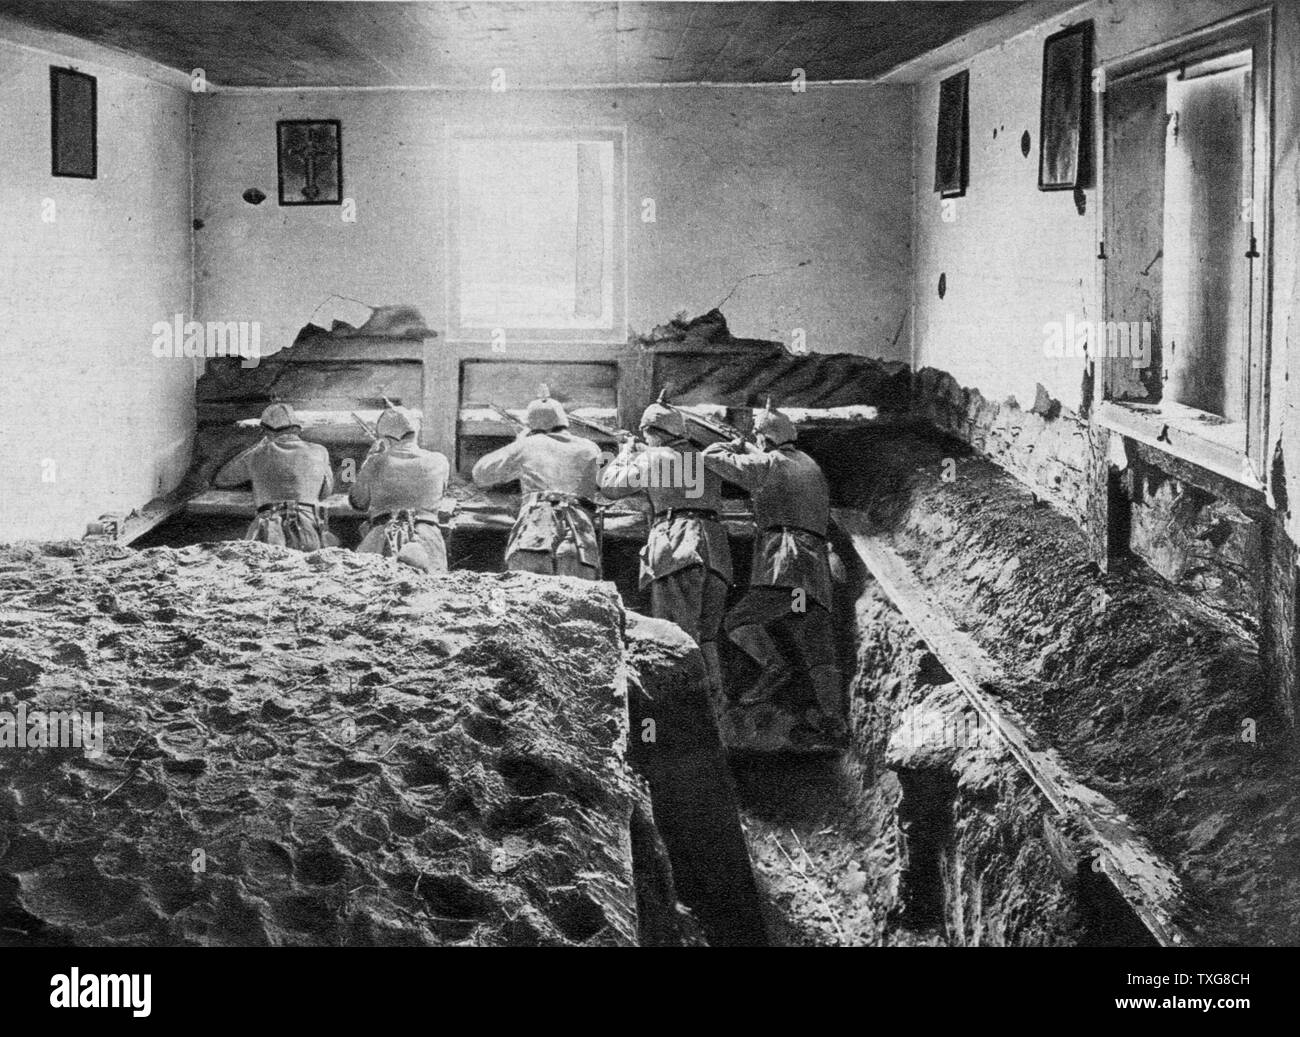 Weltkrieg I: Ostfront. Deutsche Soldaten in eine defensive Position im Keller eines Hauses, Weichsel Region Polens Stockfoto